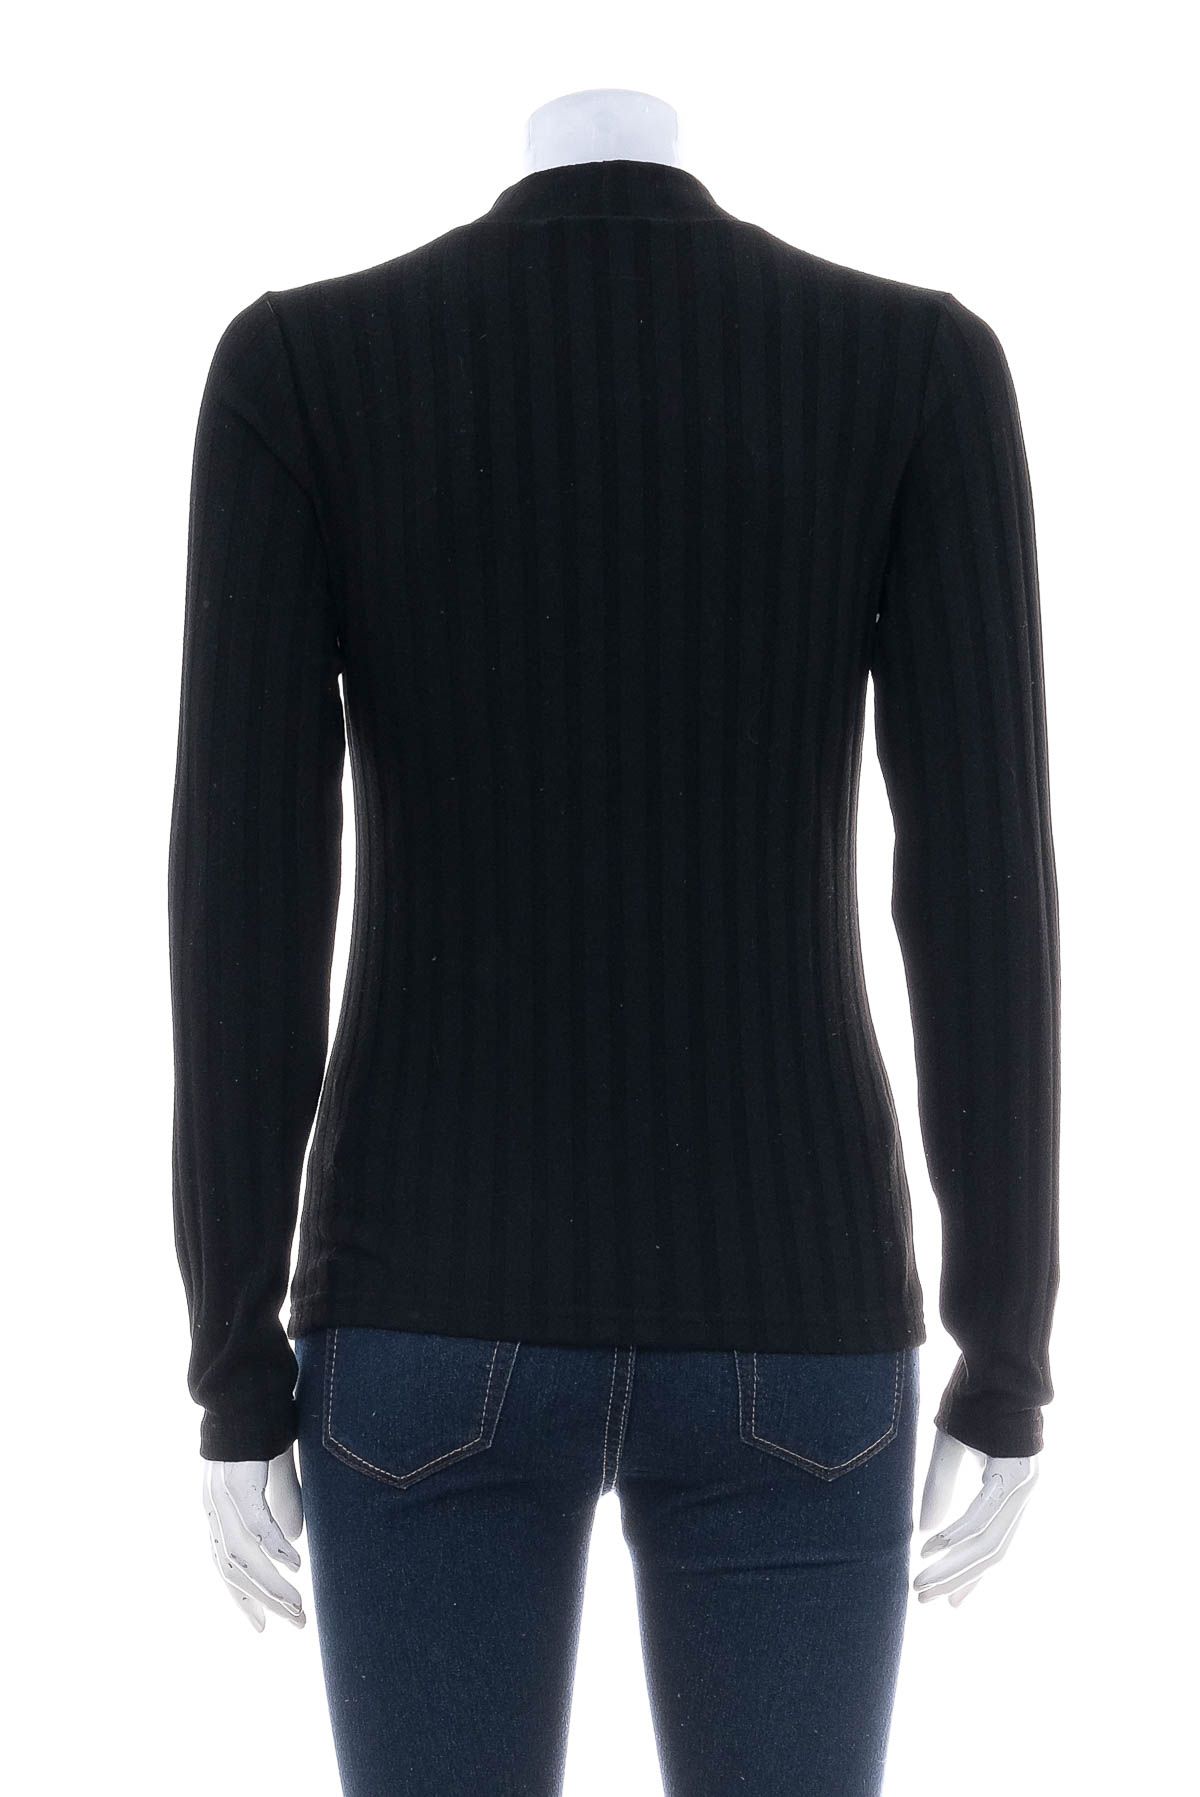 Women's sweater - Janina - 1